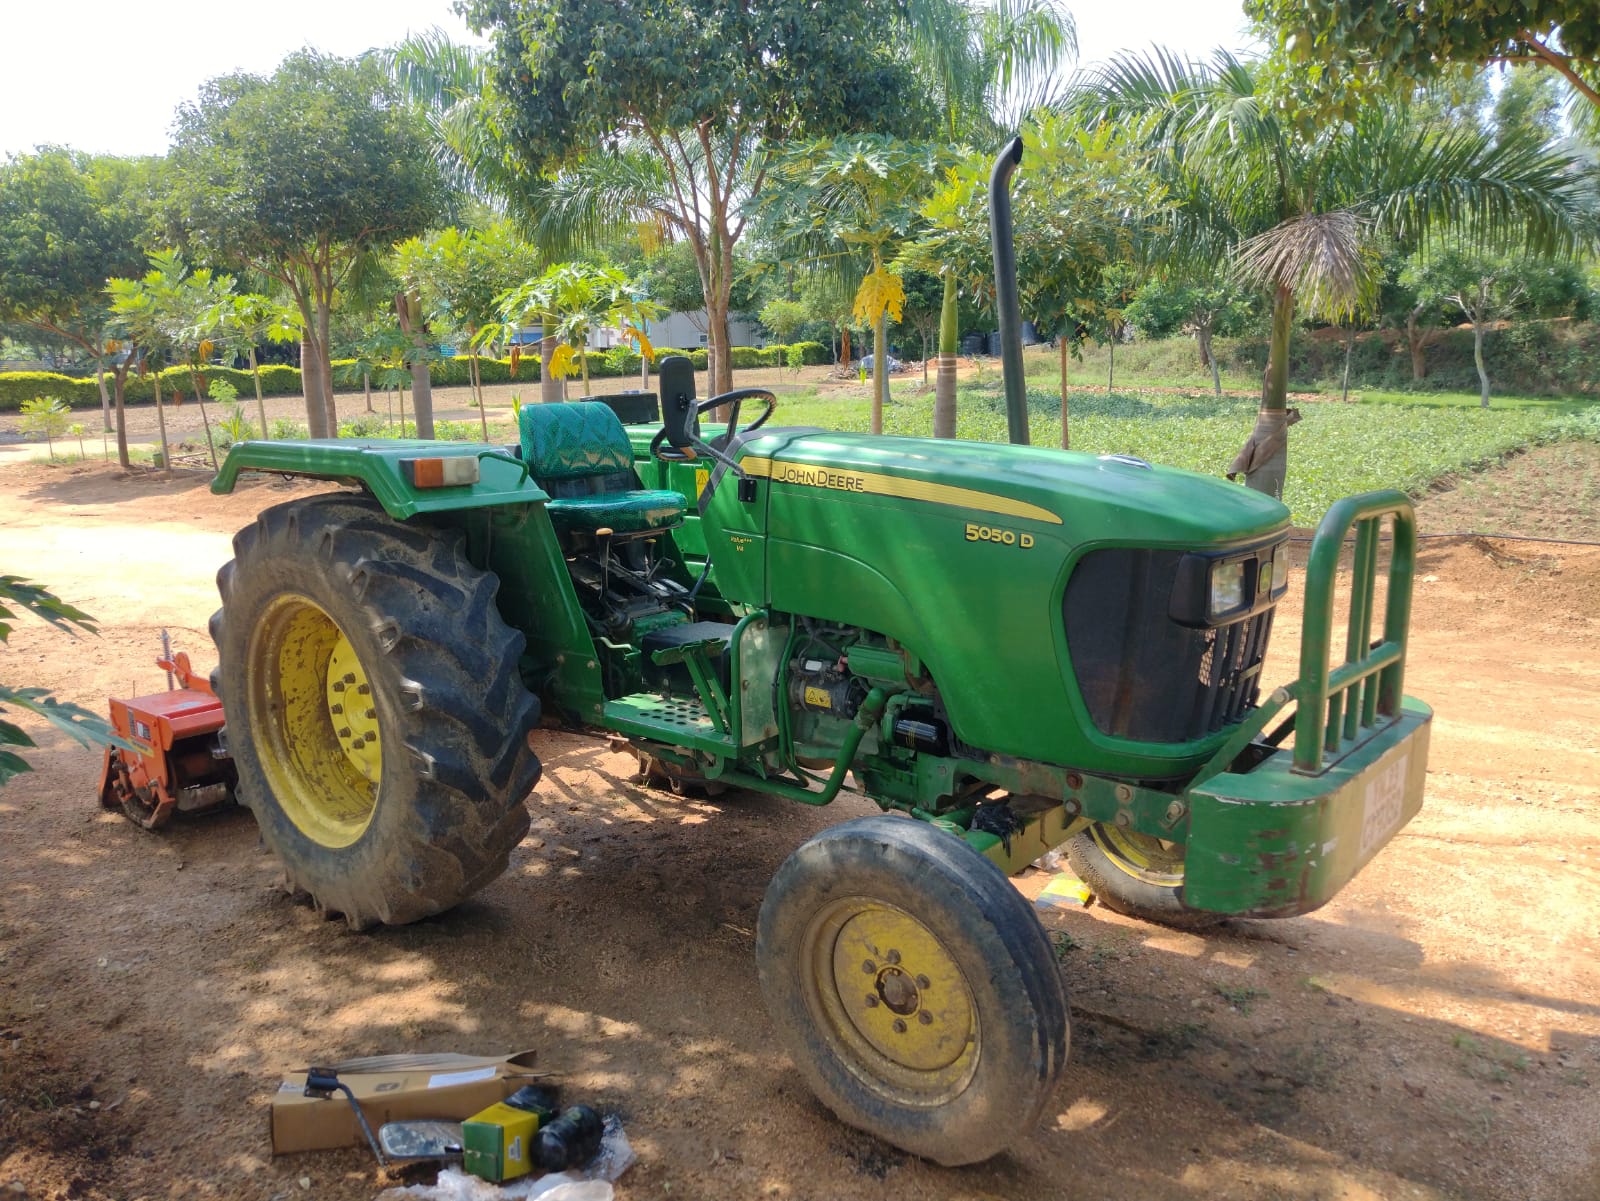 JOHN DEERE 5050 D Tractor Sales In Tamilnadu